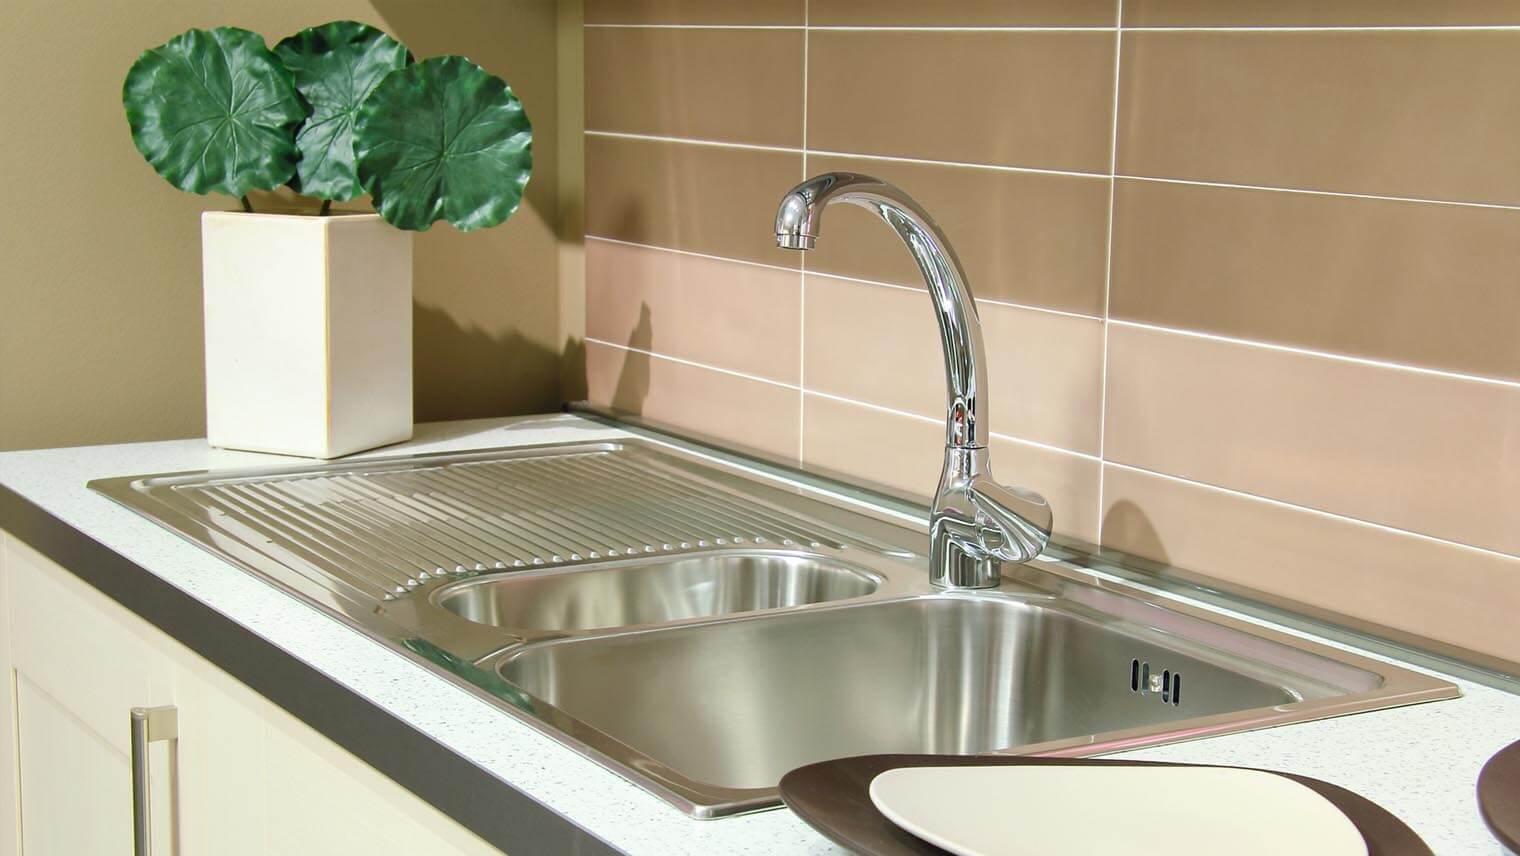 キッチンシンクまわりの水垢・ヌメリの落とし方と、汚れ付きを予防する方法